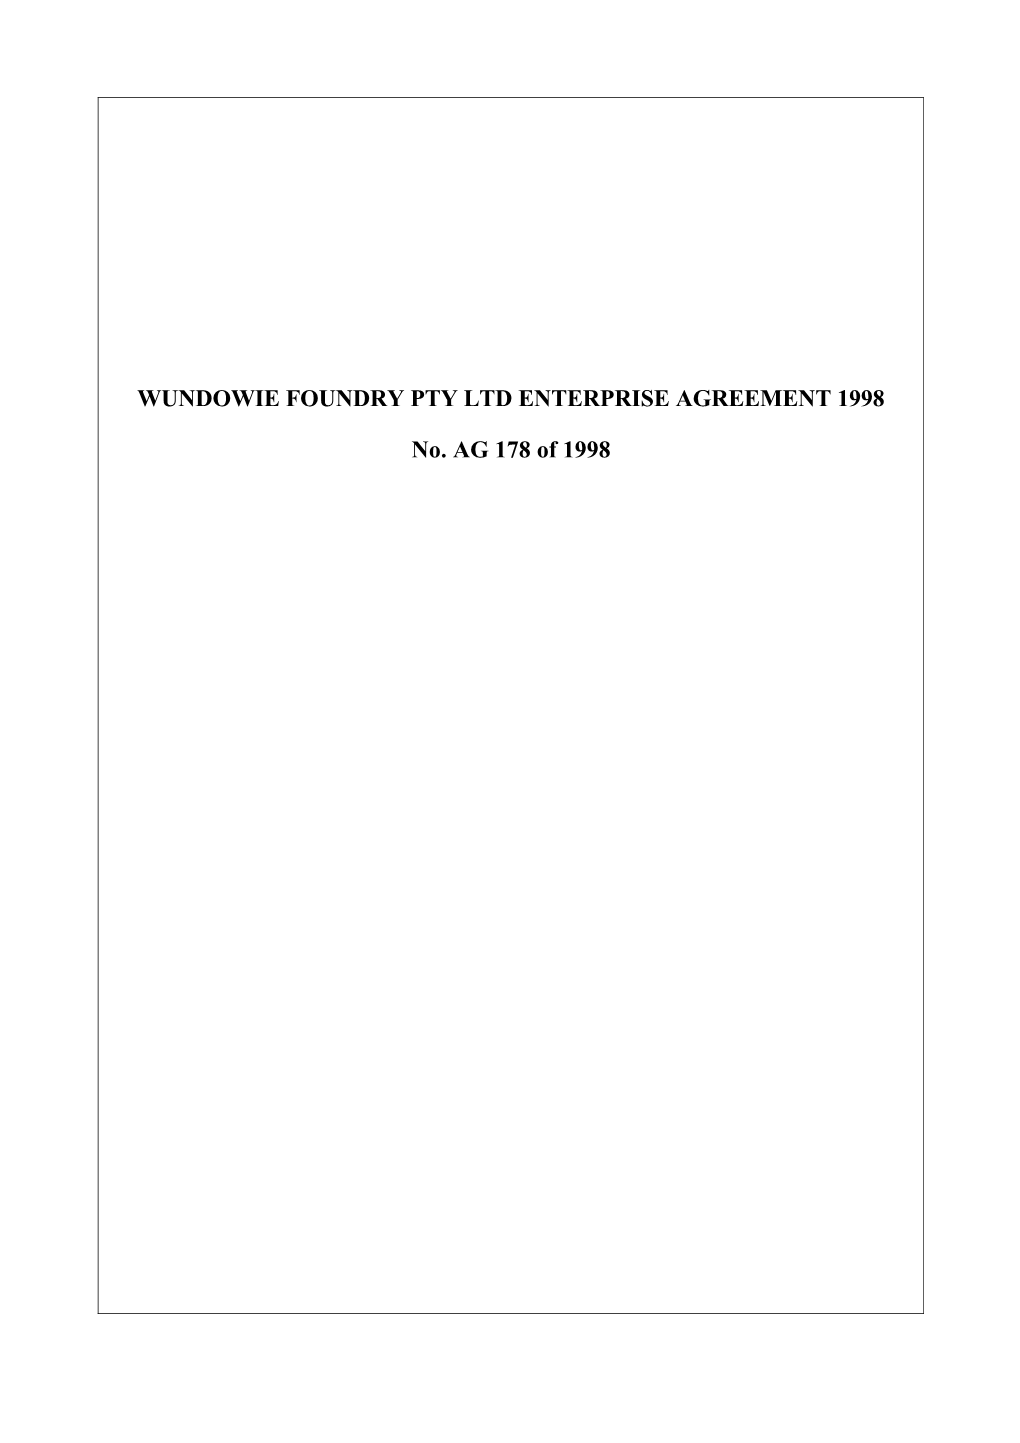 Wundowie Foundry Pty Ltd Enterprise Agreement 1998